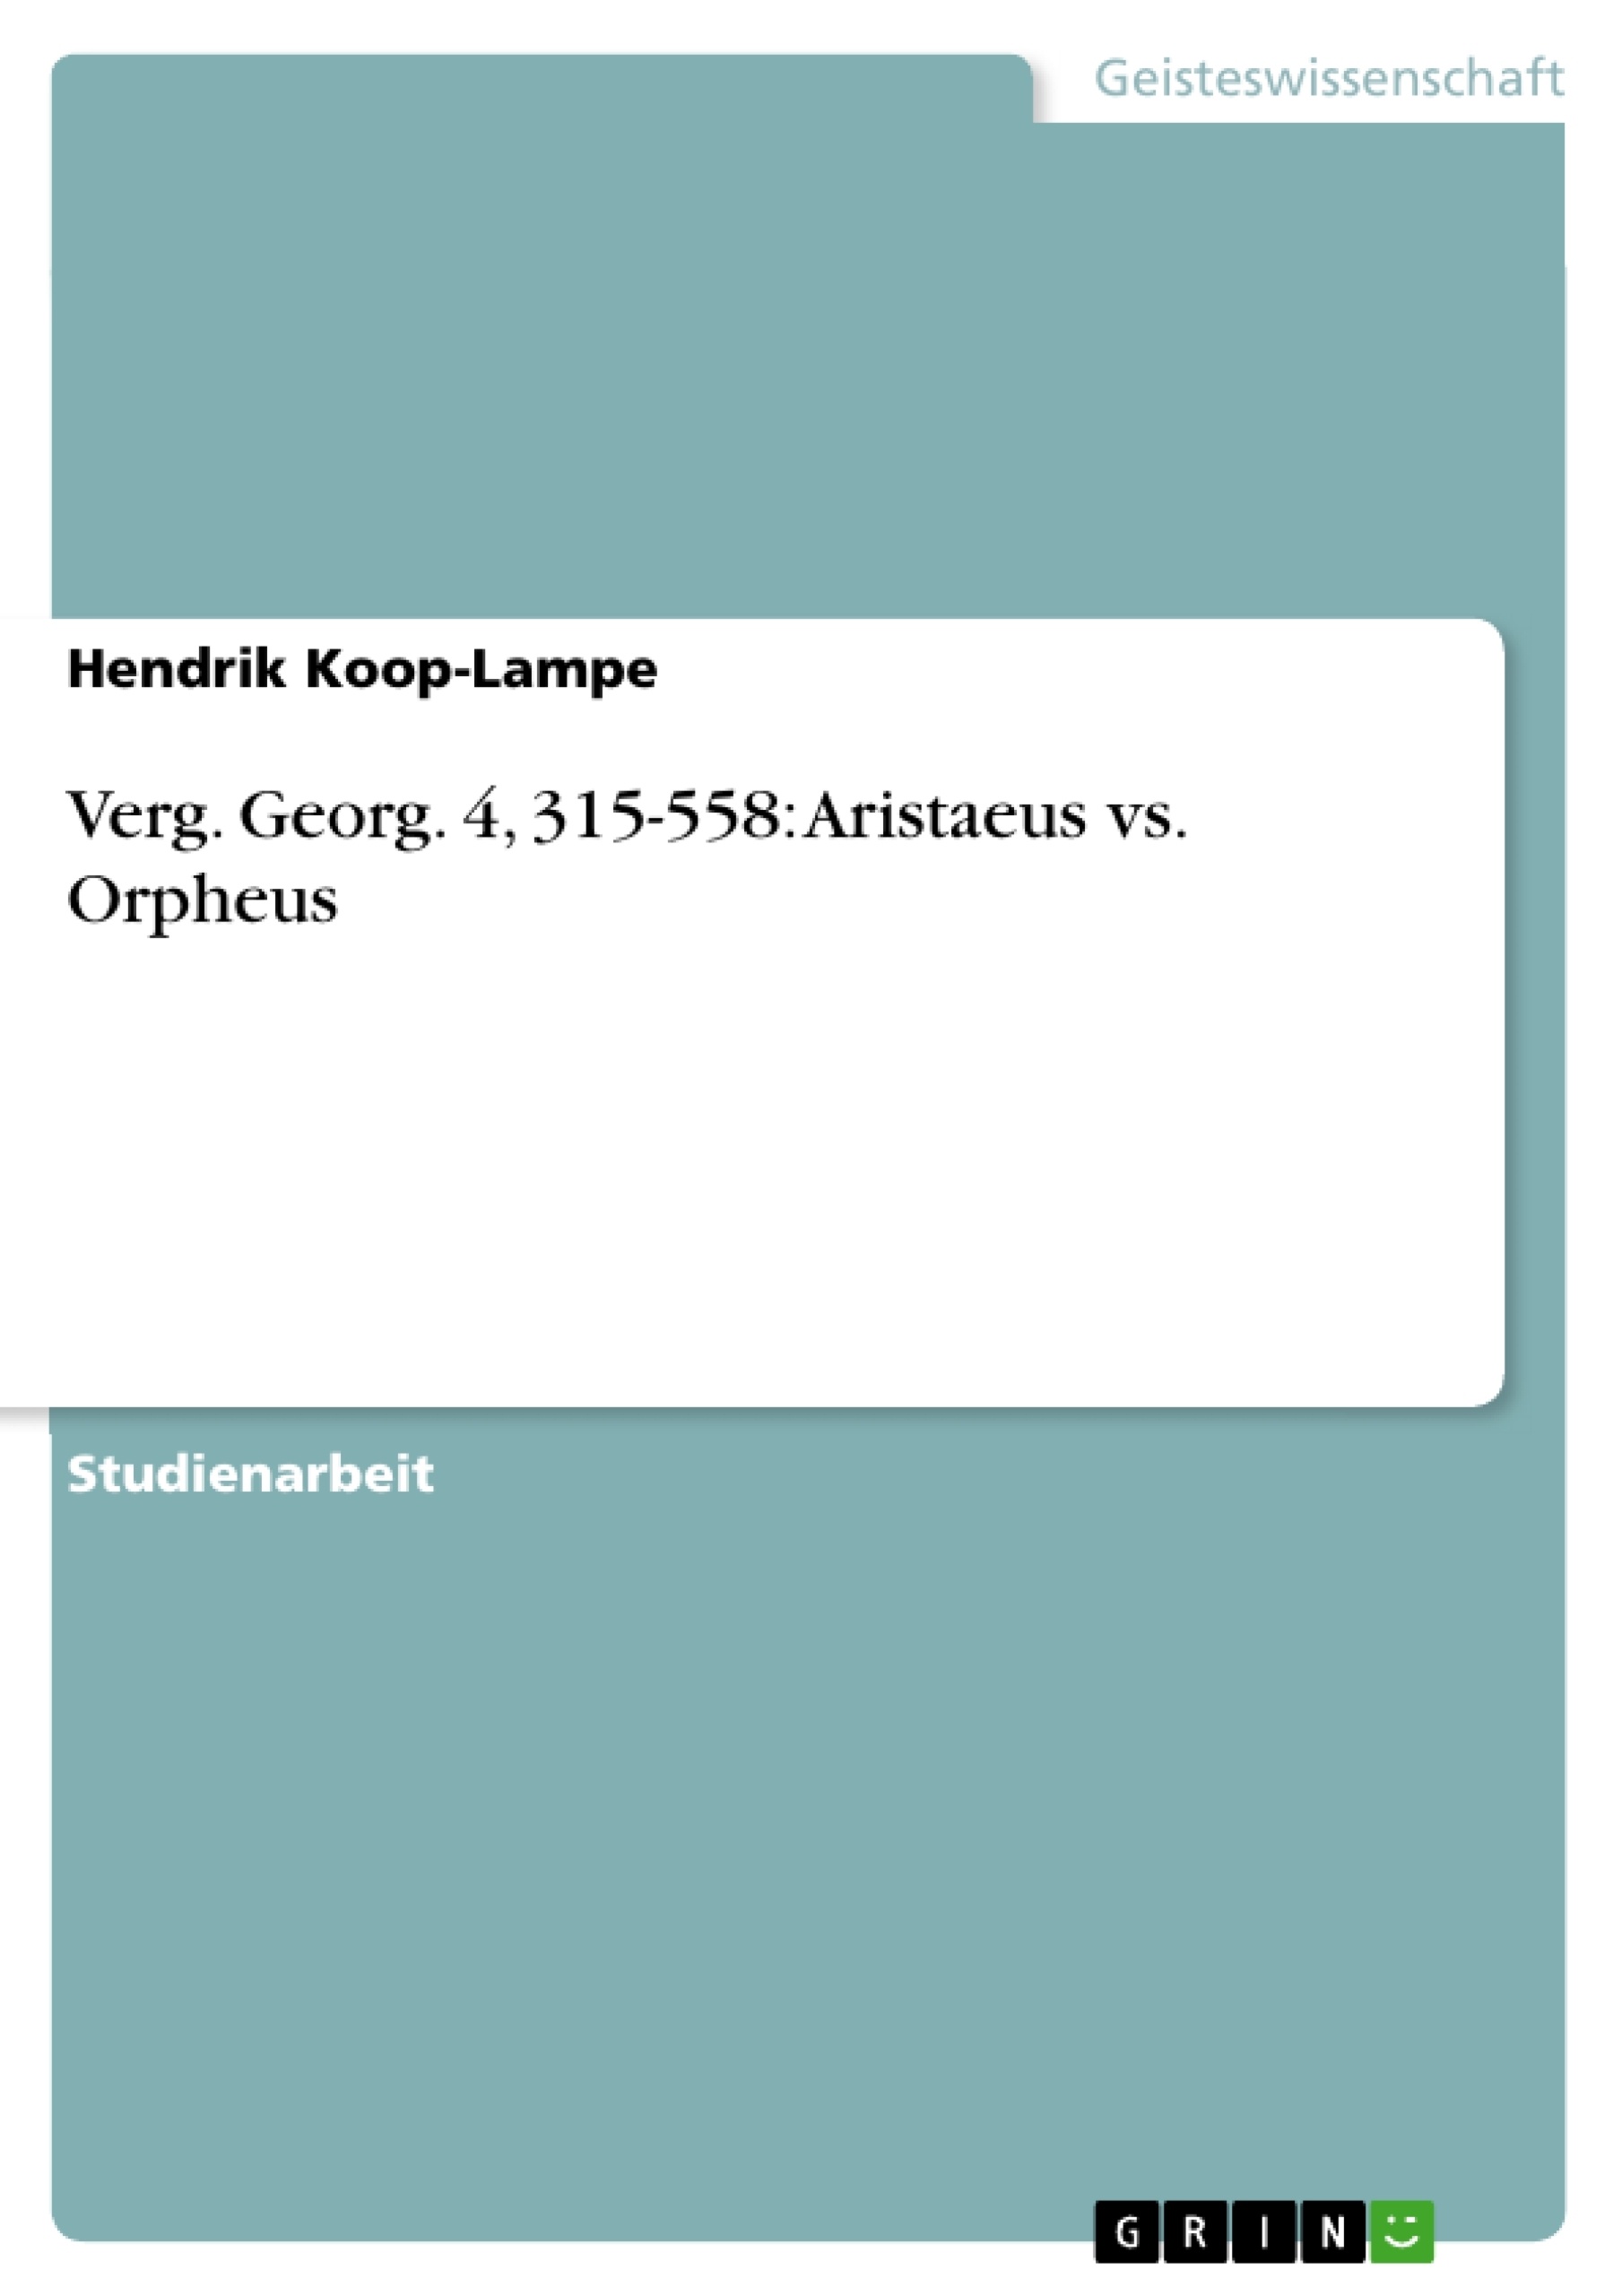 Title: Verg. Georg. 4, 315-558: Aristaeus vs. Orpheus